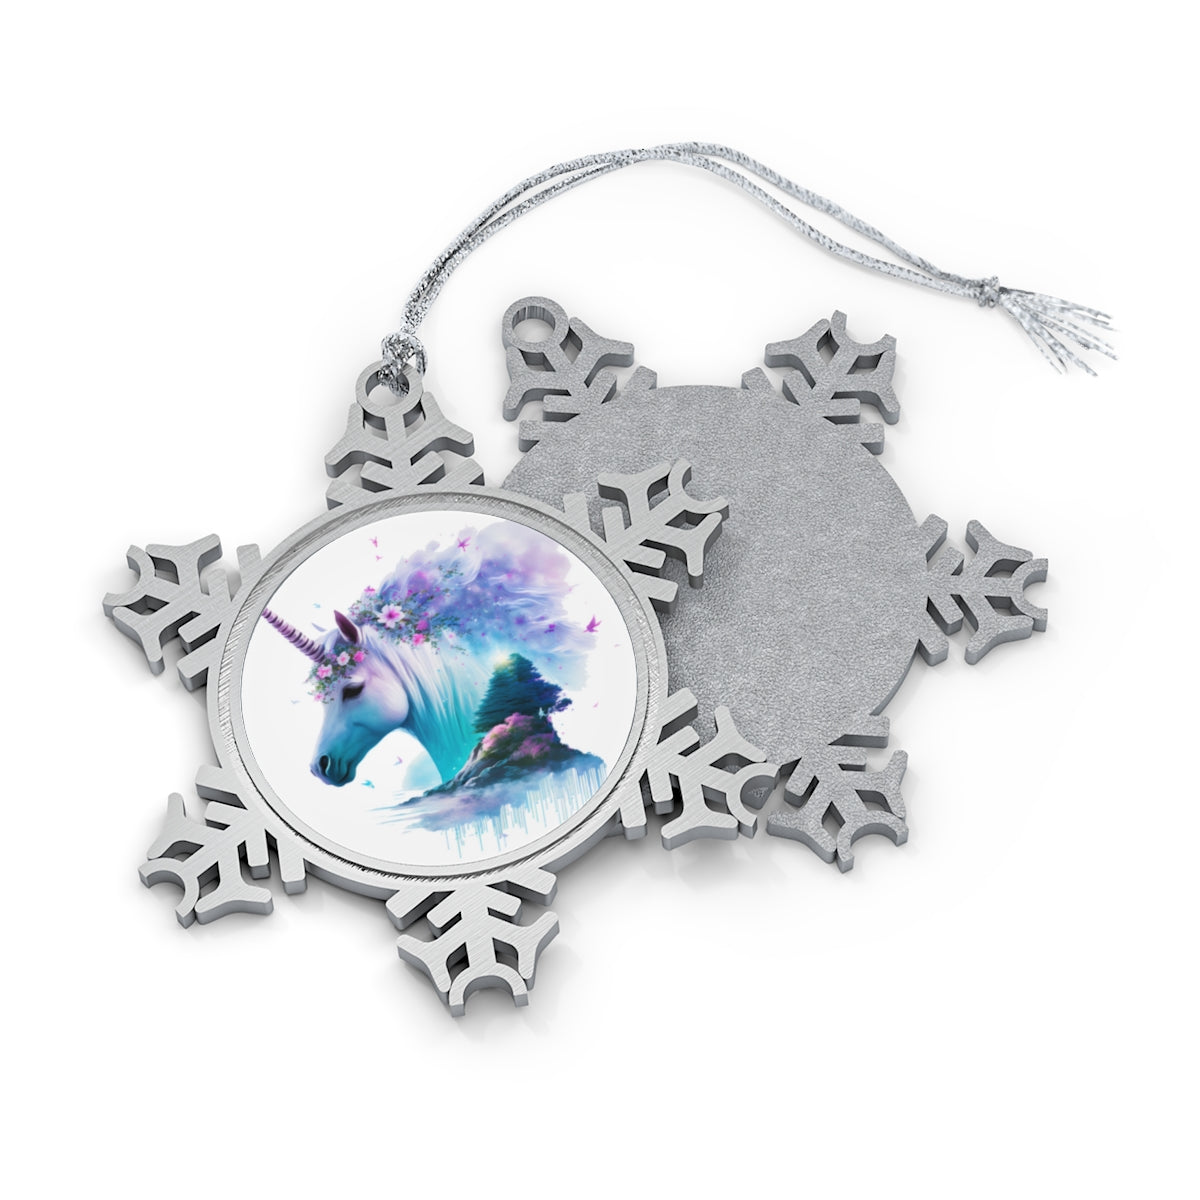 Neduz Designs Exposed Animals Dream Unicorn Pewter Snowflake Ornament